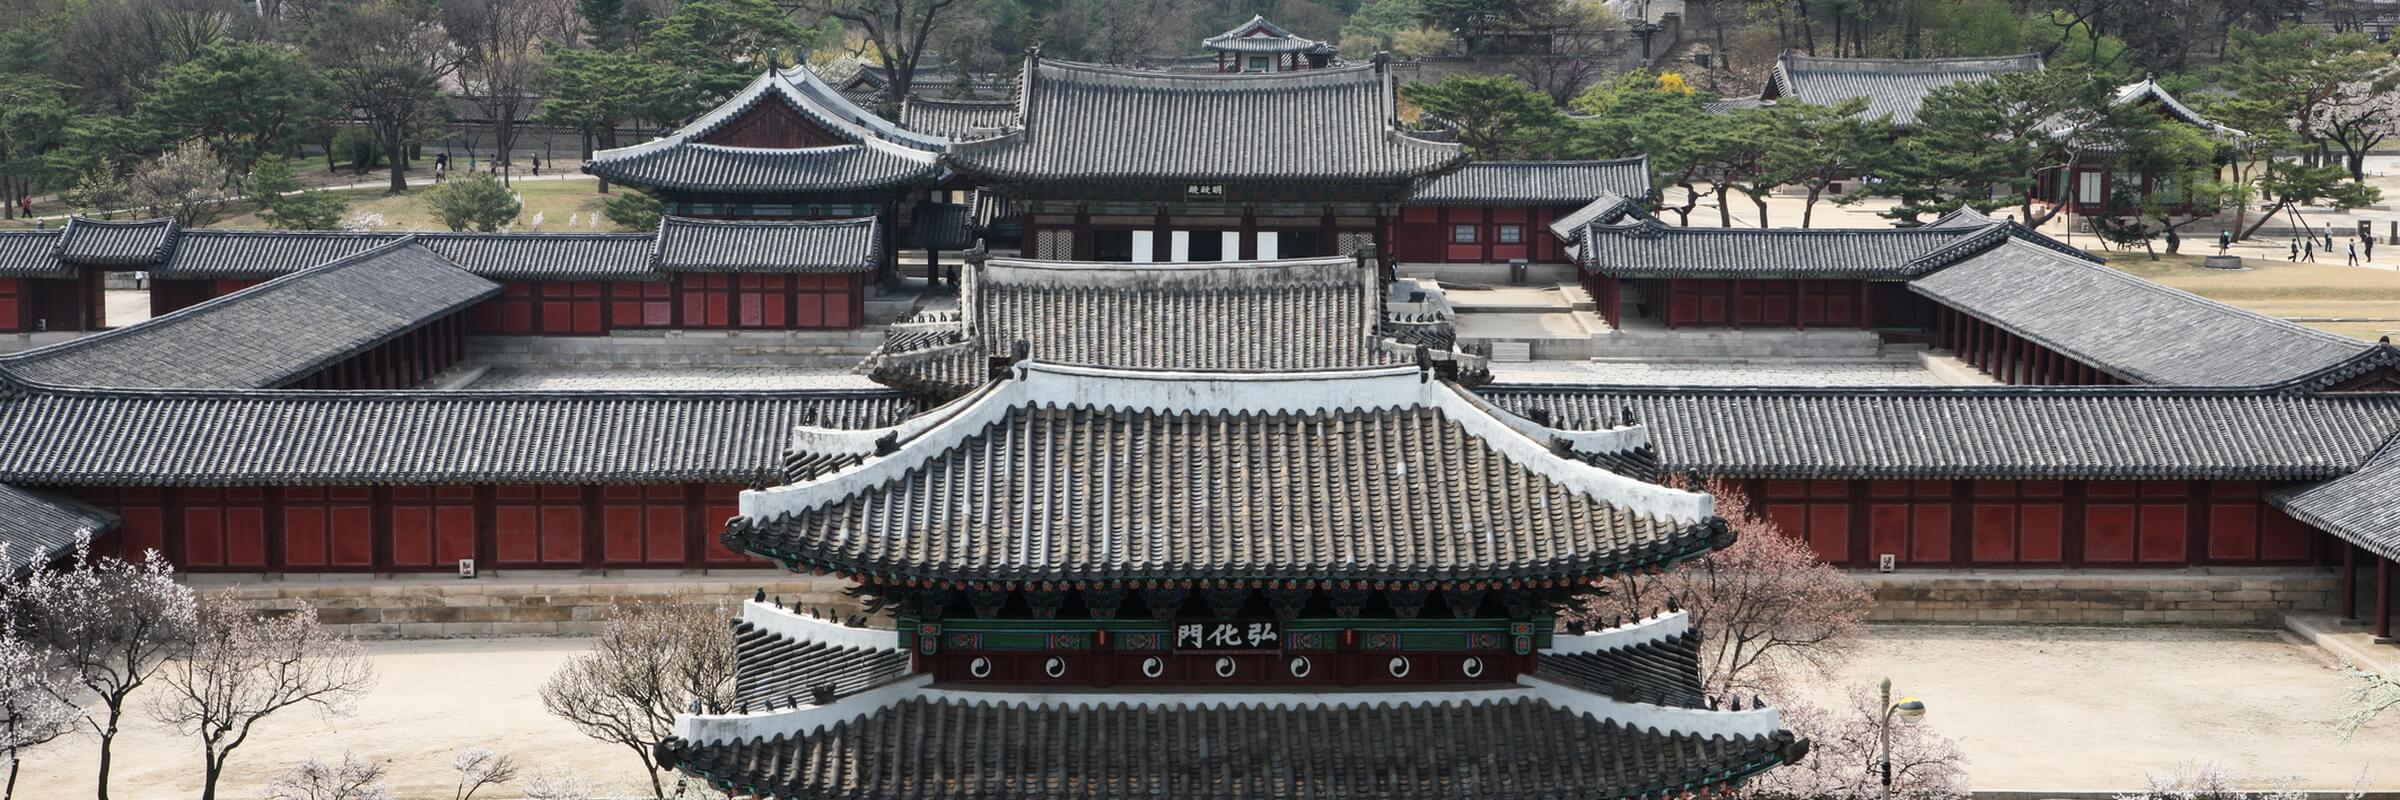 Der Palastkomplex Changdeokgung ist einer der fünf noch erhaltenen Königspaläste aus der Joseon-Dynastie in Seoul.